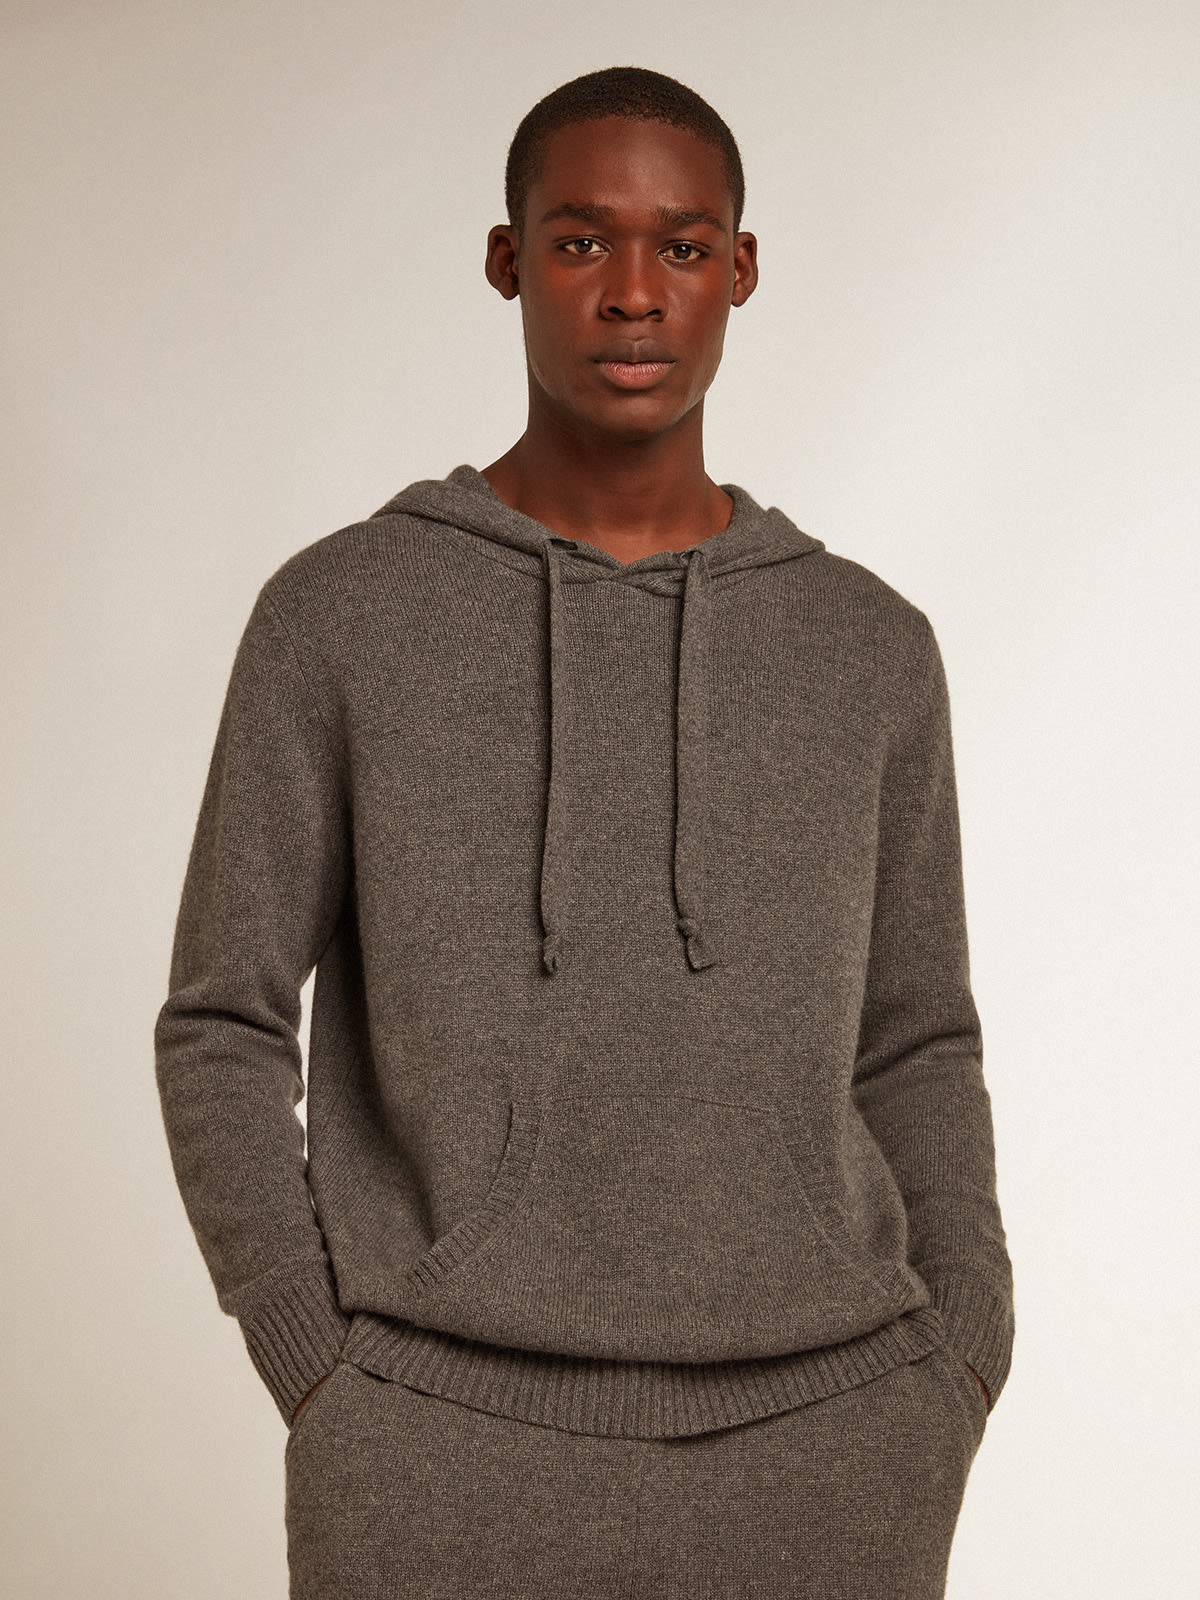 Golden Goose - Men’s gray melange cashmere blend sweatshirt with hood in 